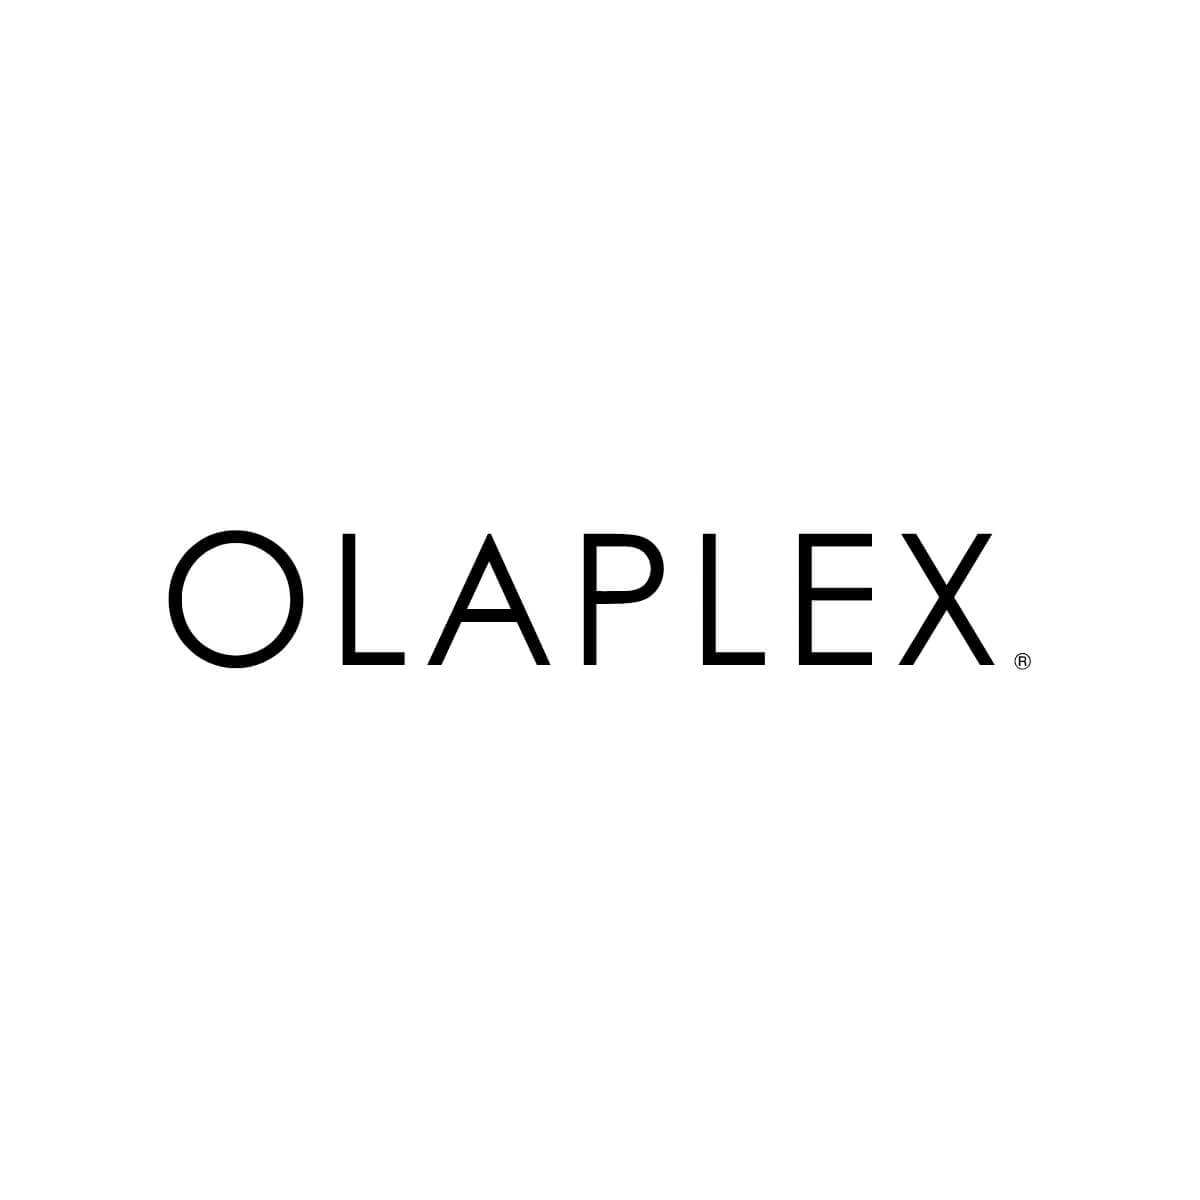 Hair Product Olaplex logo